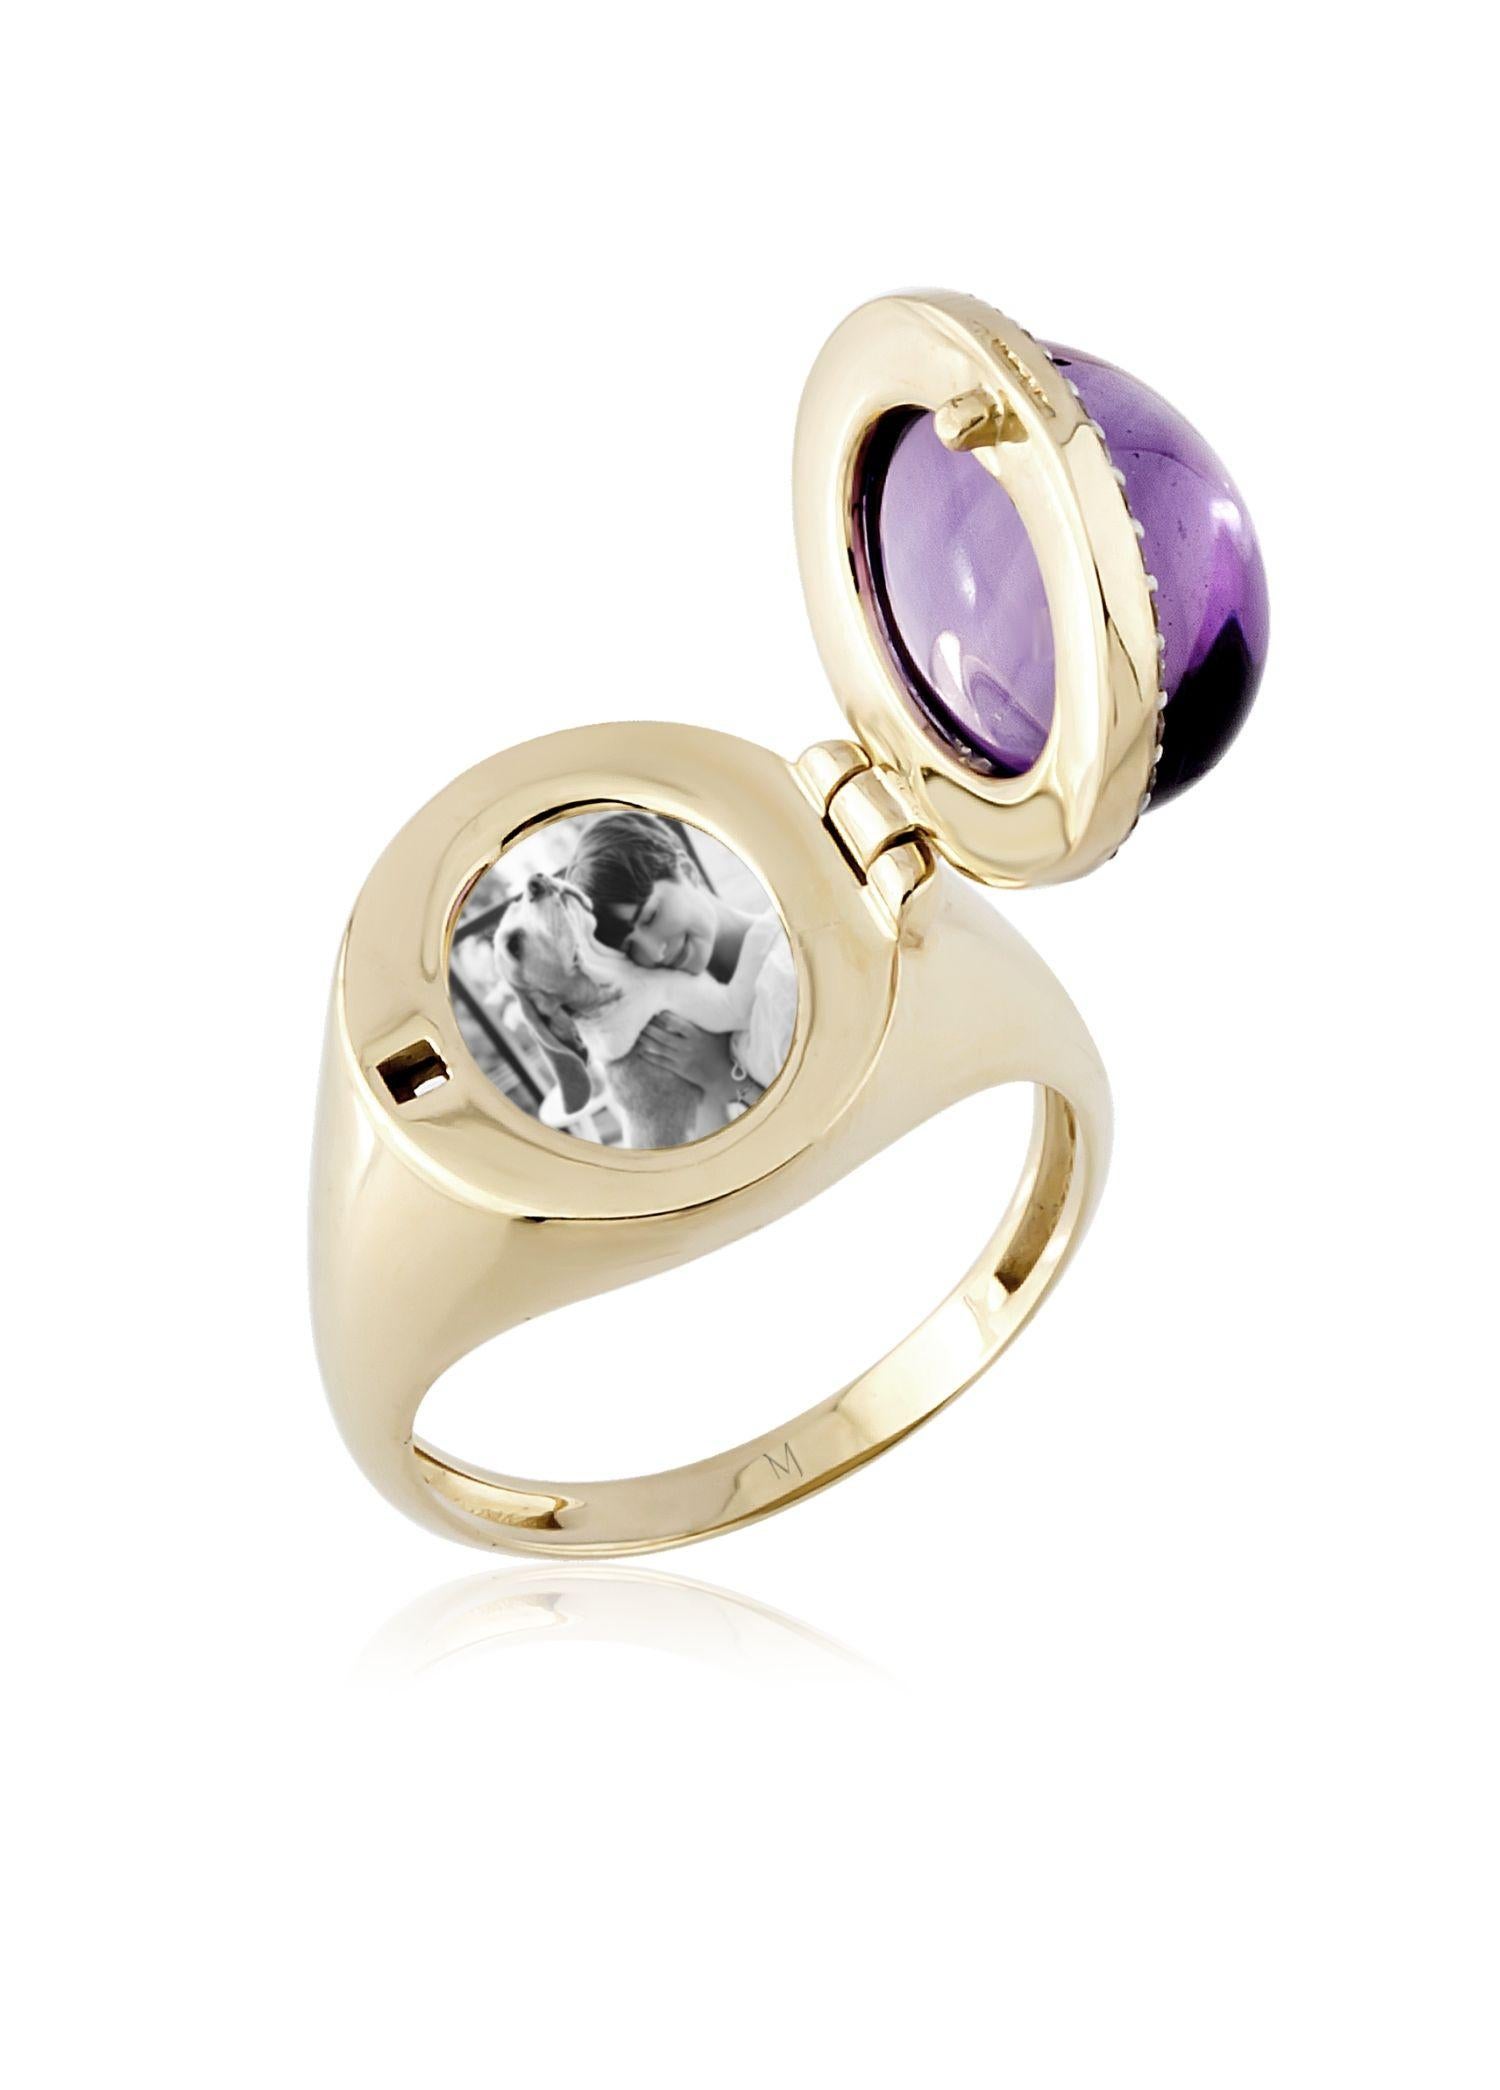 Melie Jewelry - Bague avec médaillon en améthyste

Or 14K, 0,15 ct diamant, 6,05 ct améthyste

L'histoire derrière
La collection 